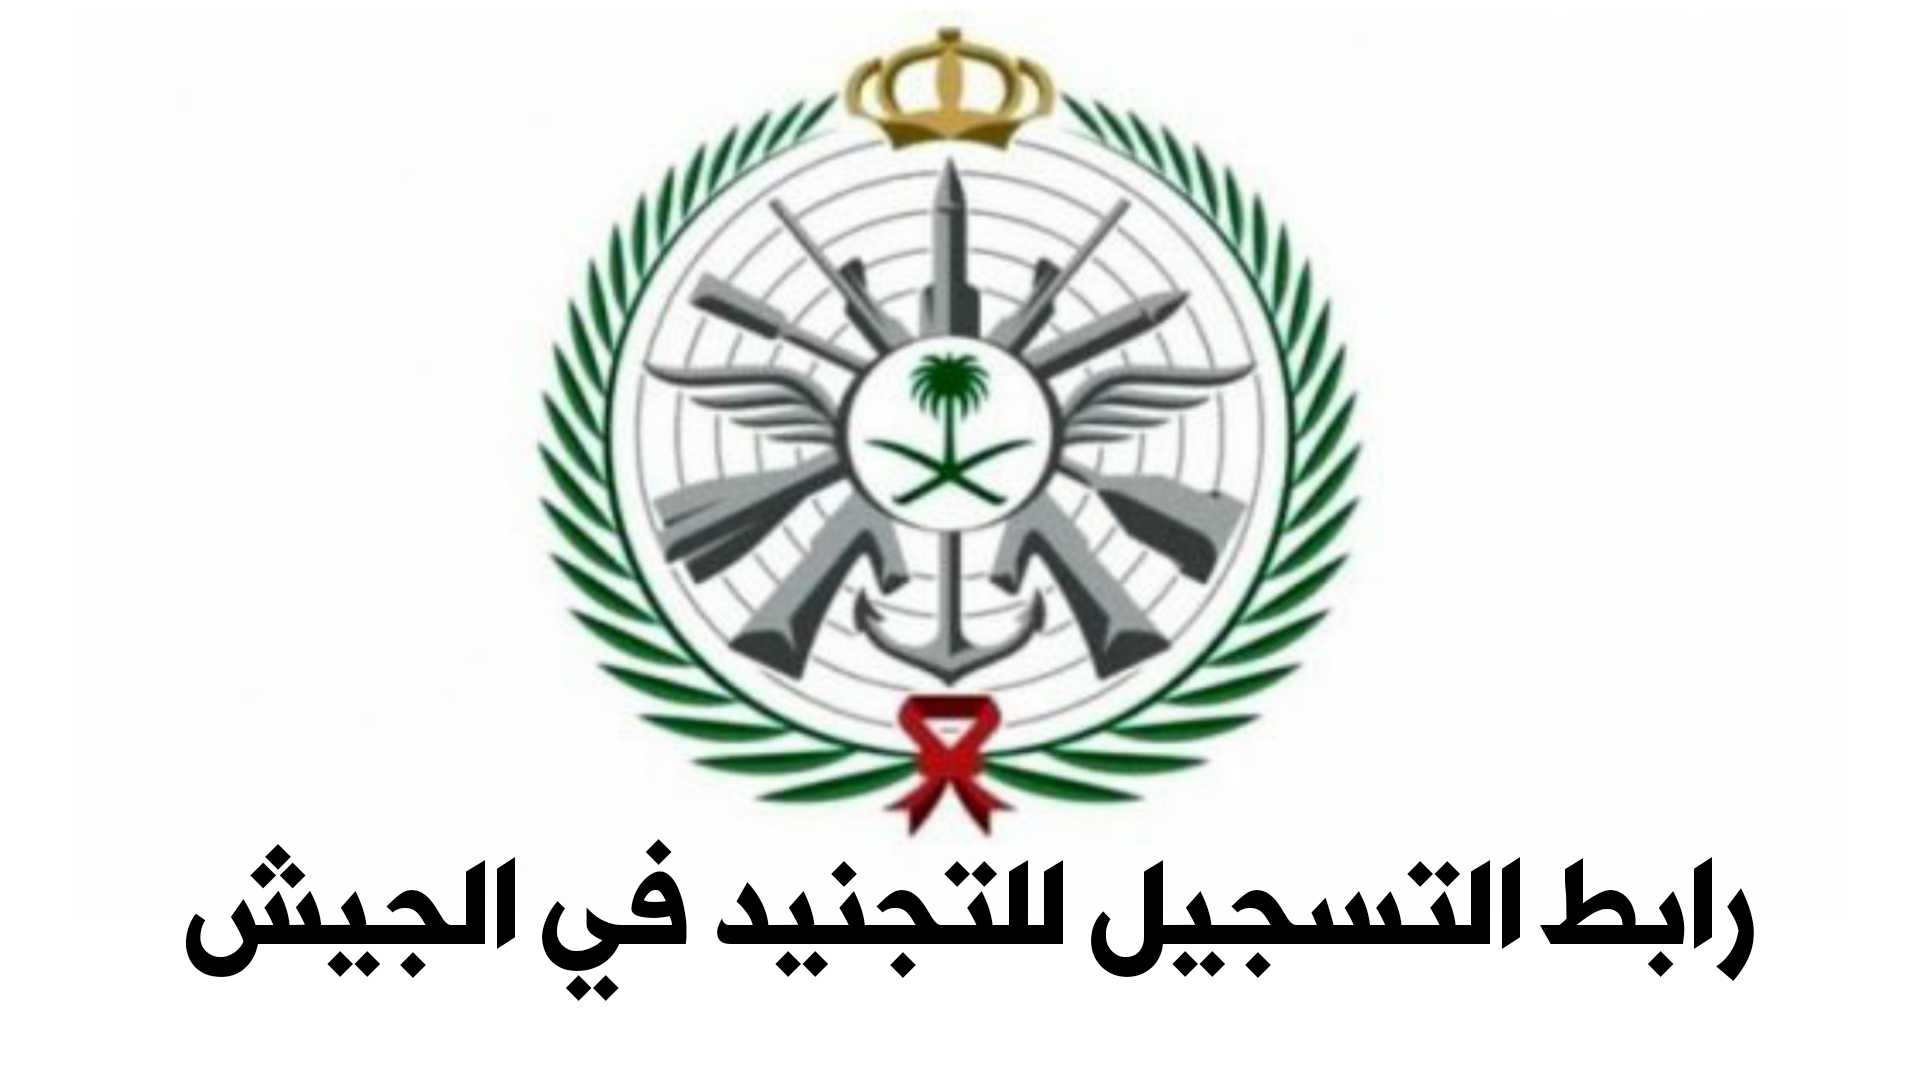 رابط التسجيل للتجنيد في الجيش السعودي للرجال والنساء وشروط التقديم وزارة الدفاع السعودية